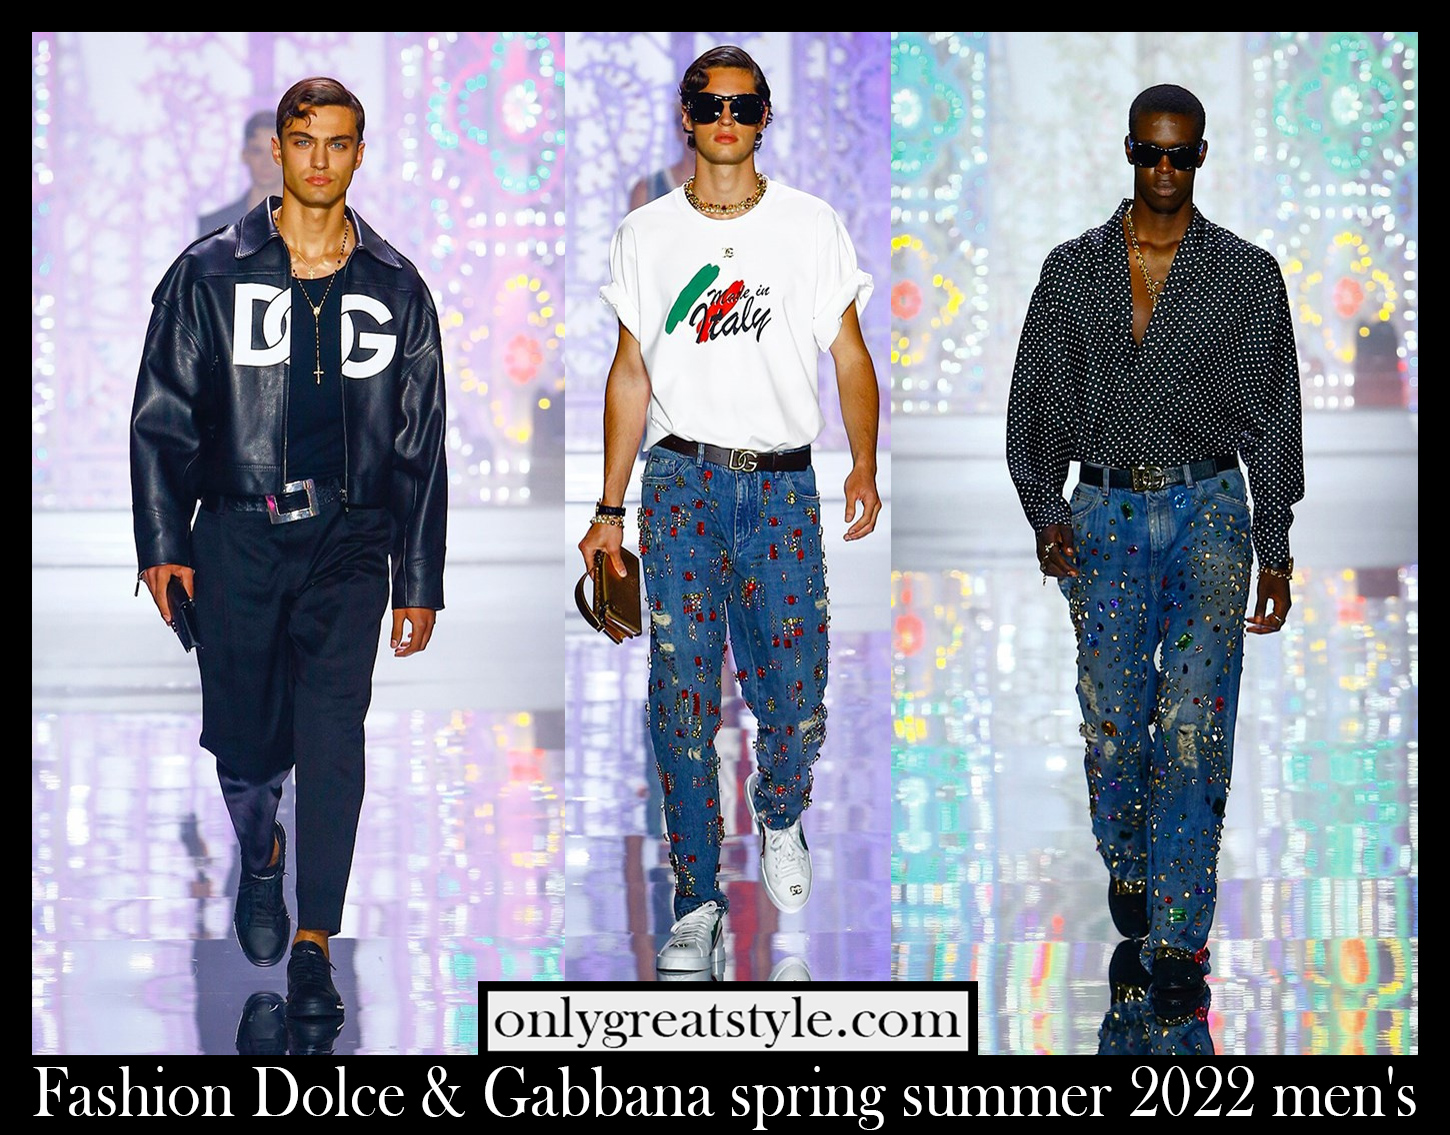 Fashion Dolce Gabbana spring summer 2022 men's